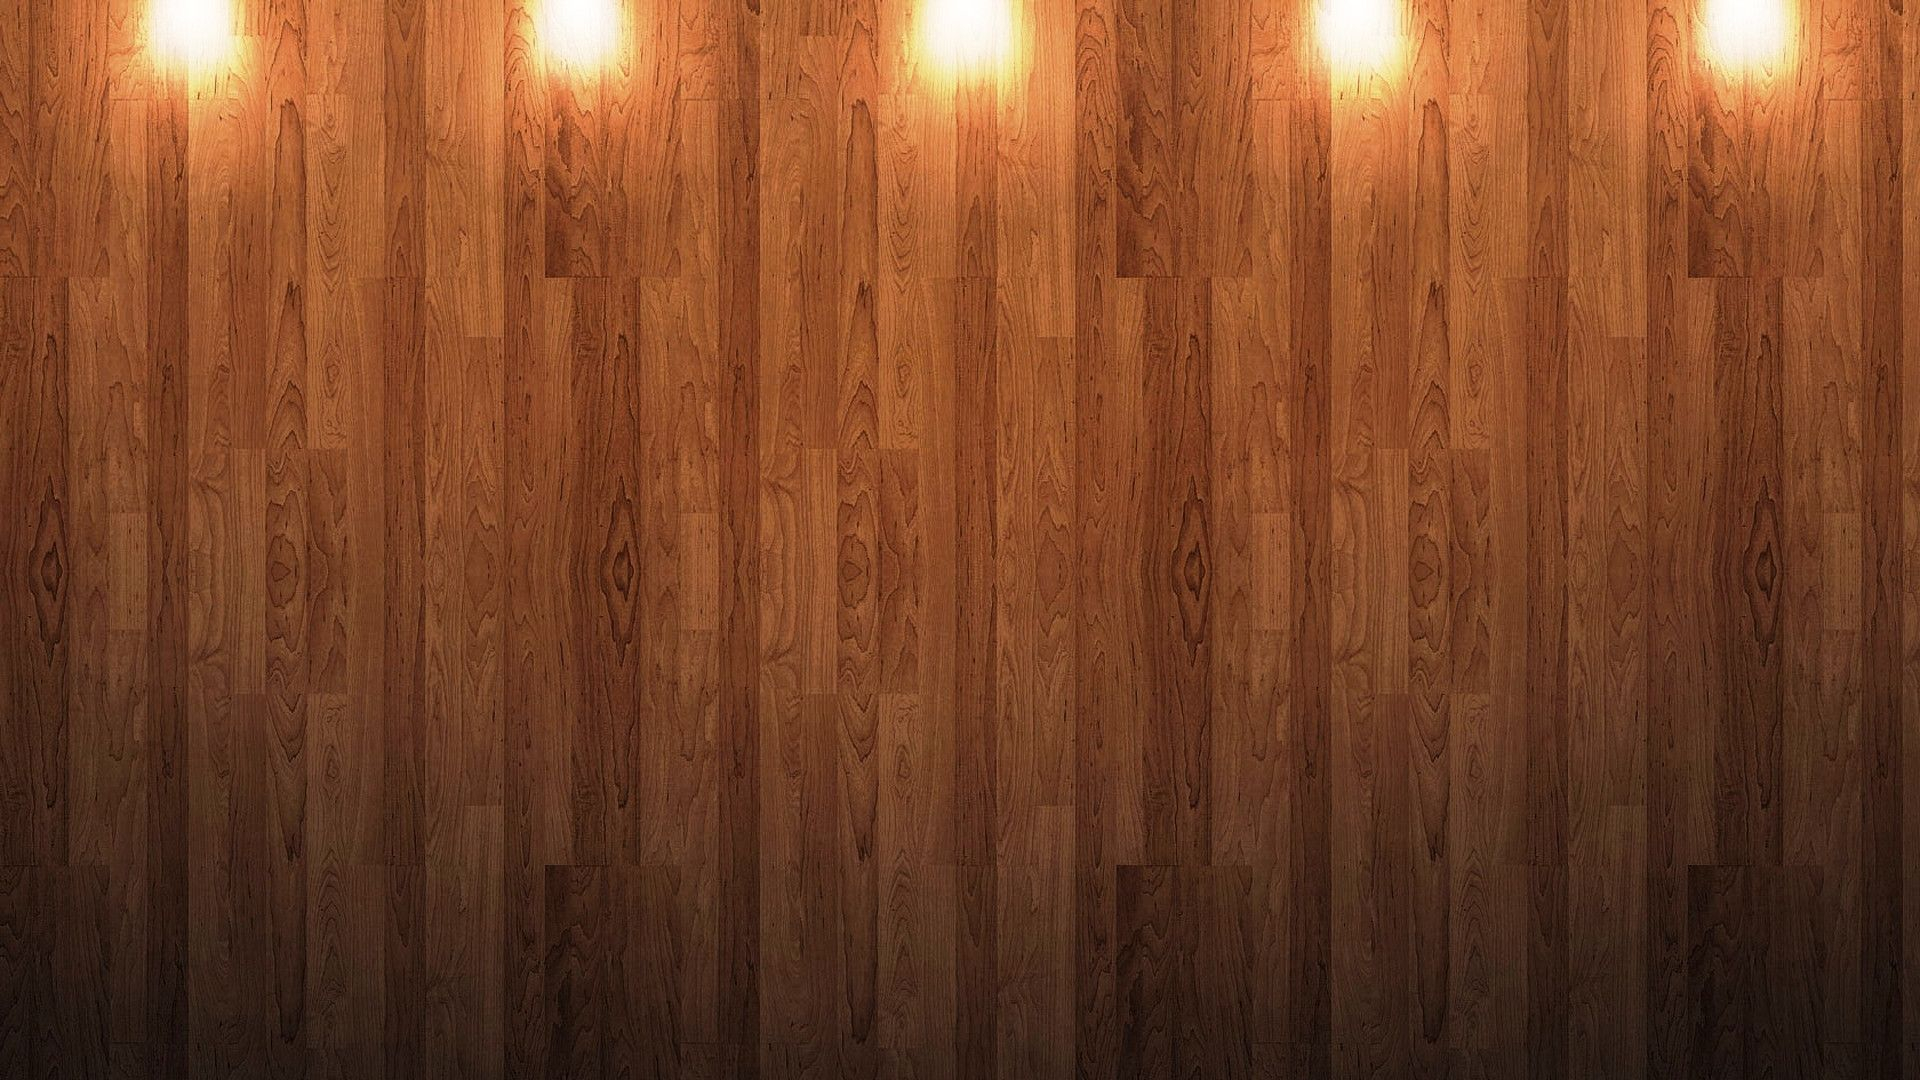 1920x1080 Leicht Nerv Schild oak wood wallpaper Etikette Stress Unendlichkeit